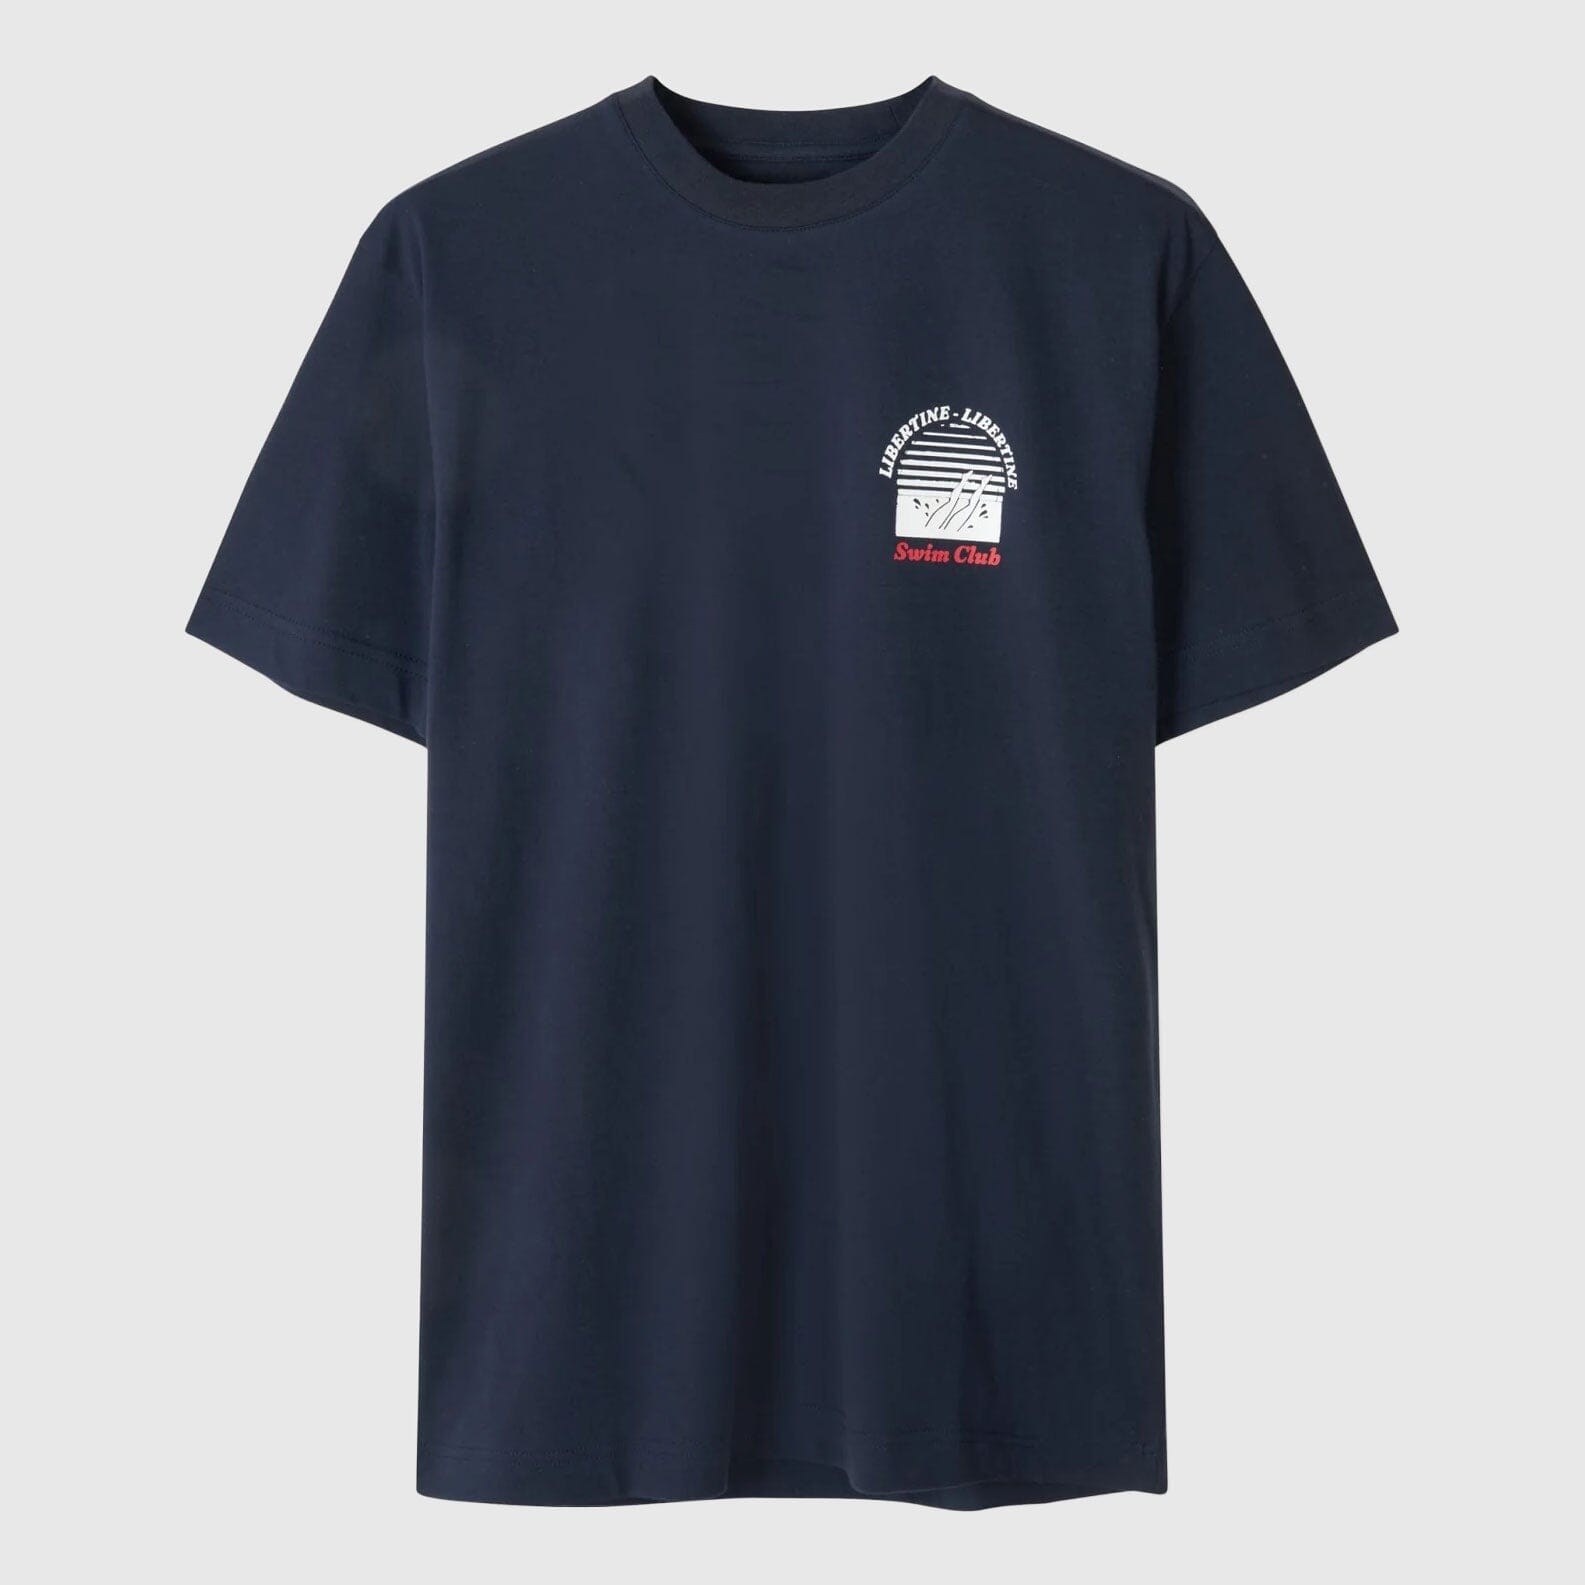 Libertine-Libertine Beat Swim Club T-Shirt - Navy T-shirt Libertine-Libertine 